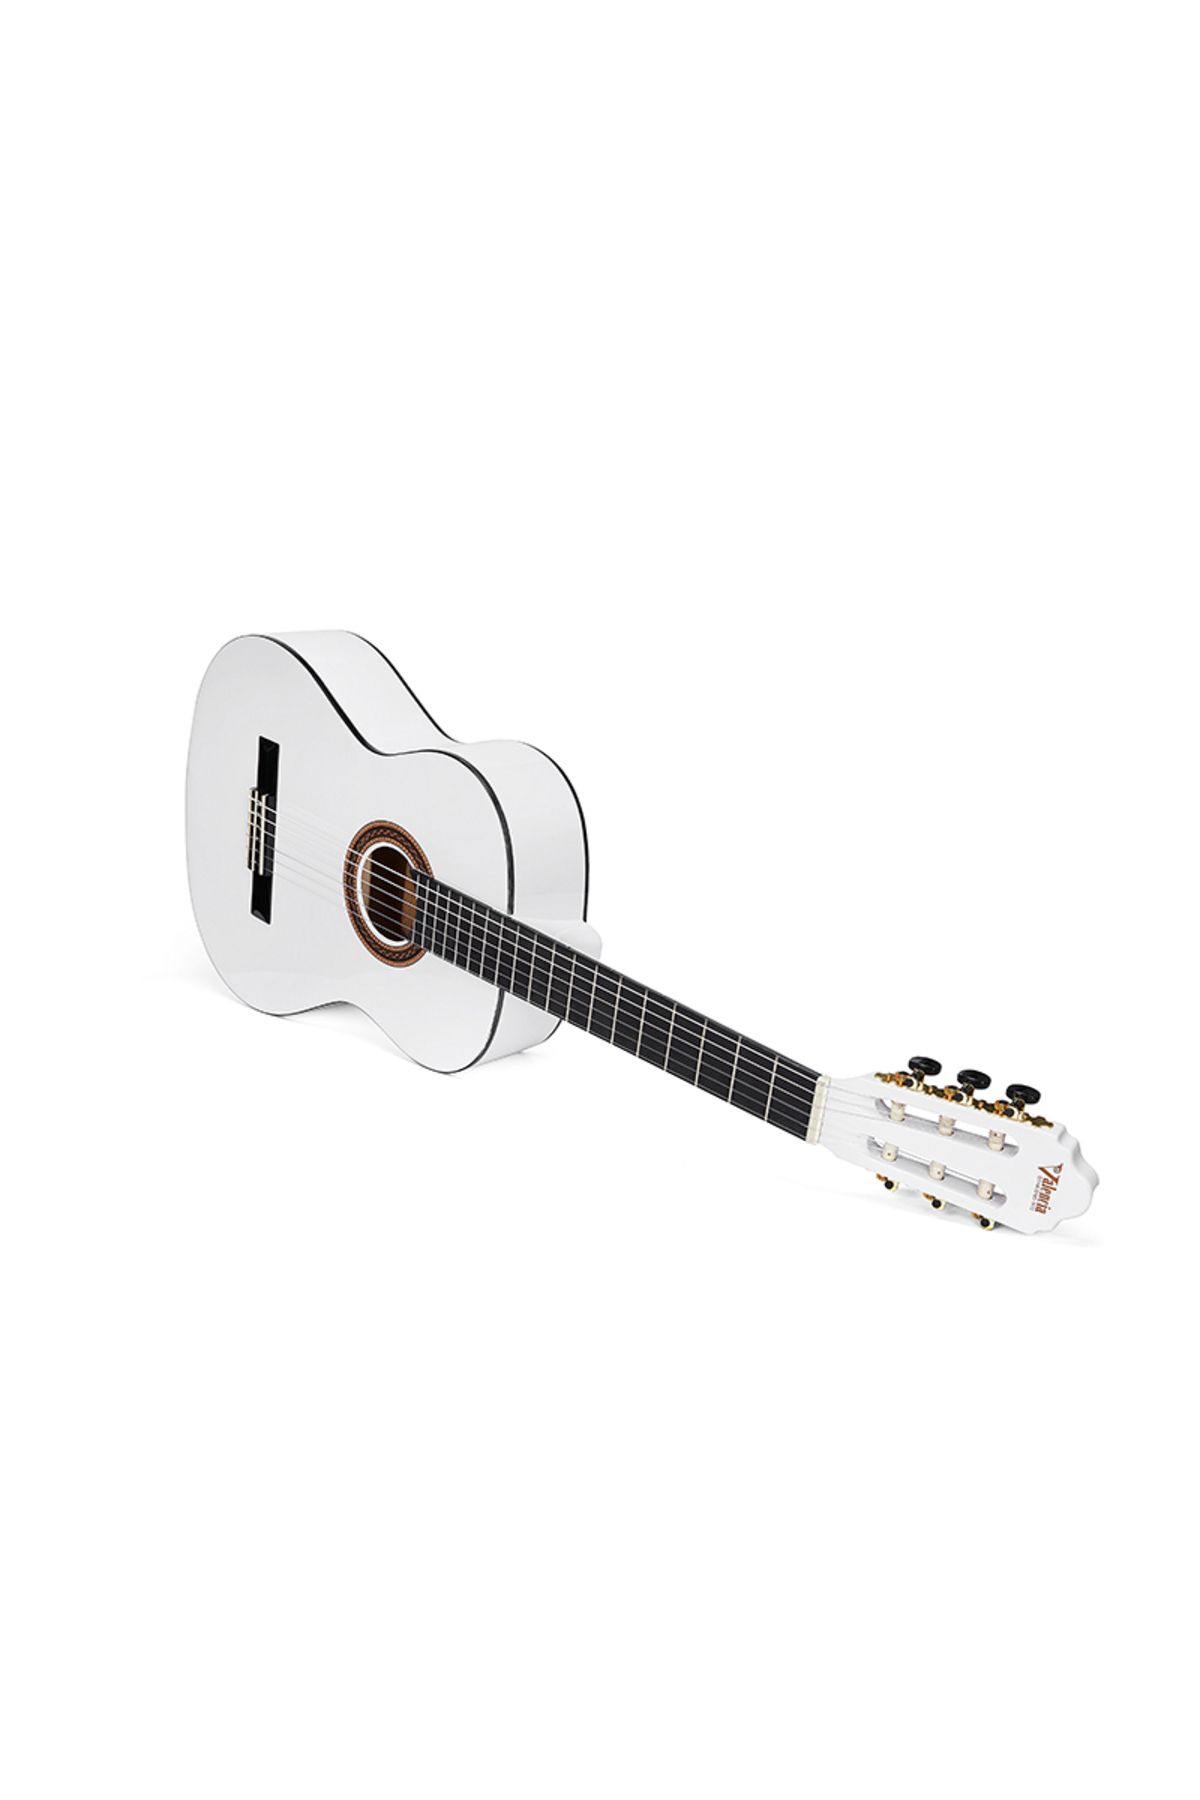 Genel Markalar Vc104twt Klasik Gitar 4/4 Beyaz Sap Çelikli Kılıf Pena